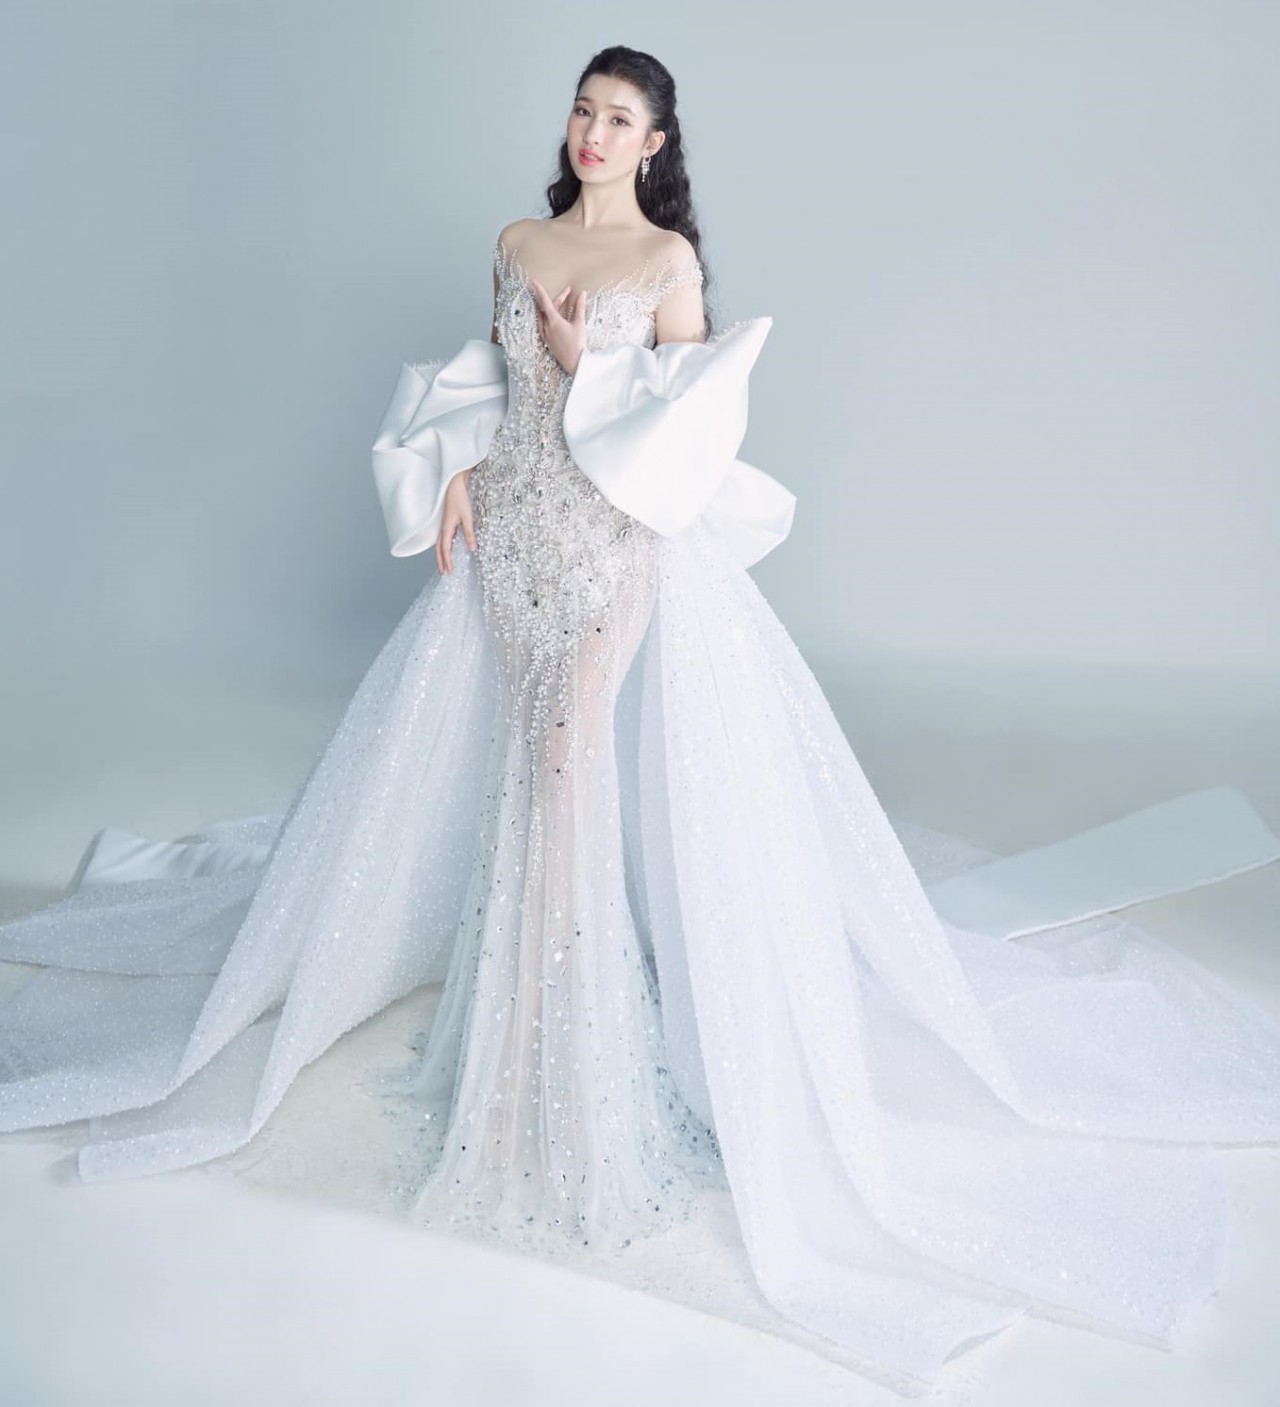 Đêm chung kết Hoa hậu Quốc tế 2023: Á hậu Phương Nhi hé lộ hai thiết kế trang phục dạ hội màu trắng